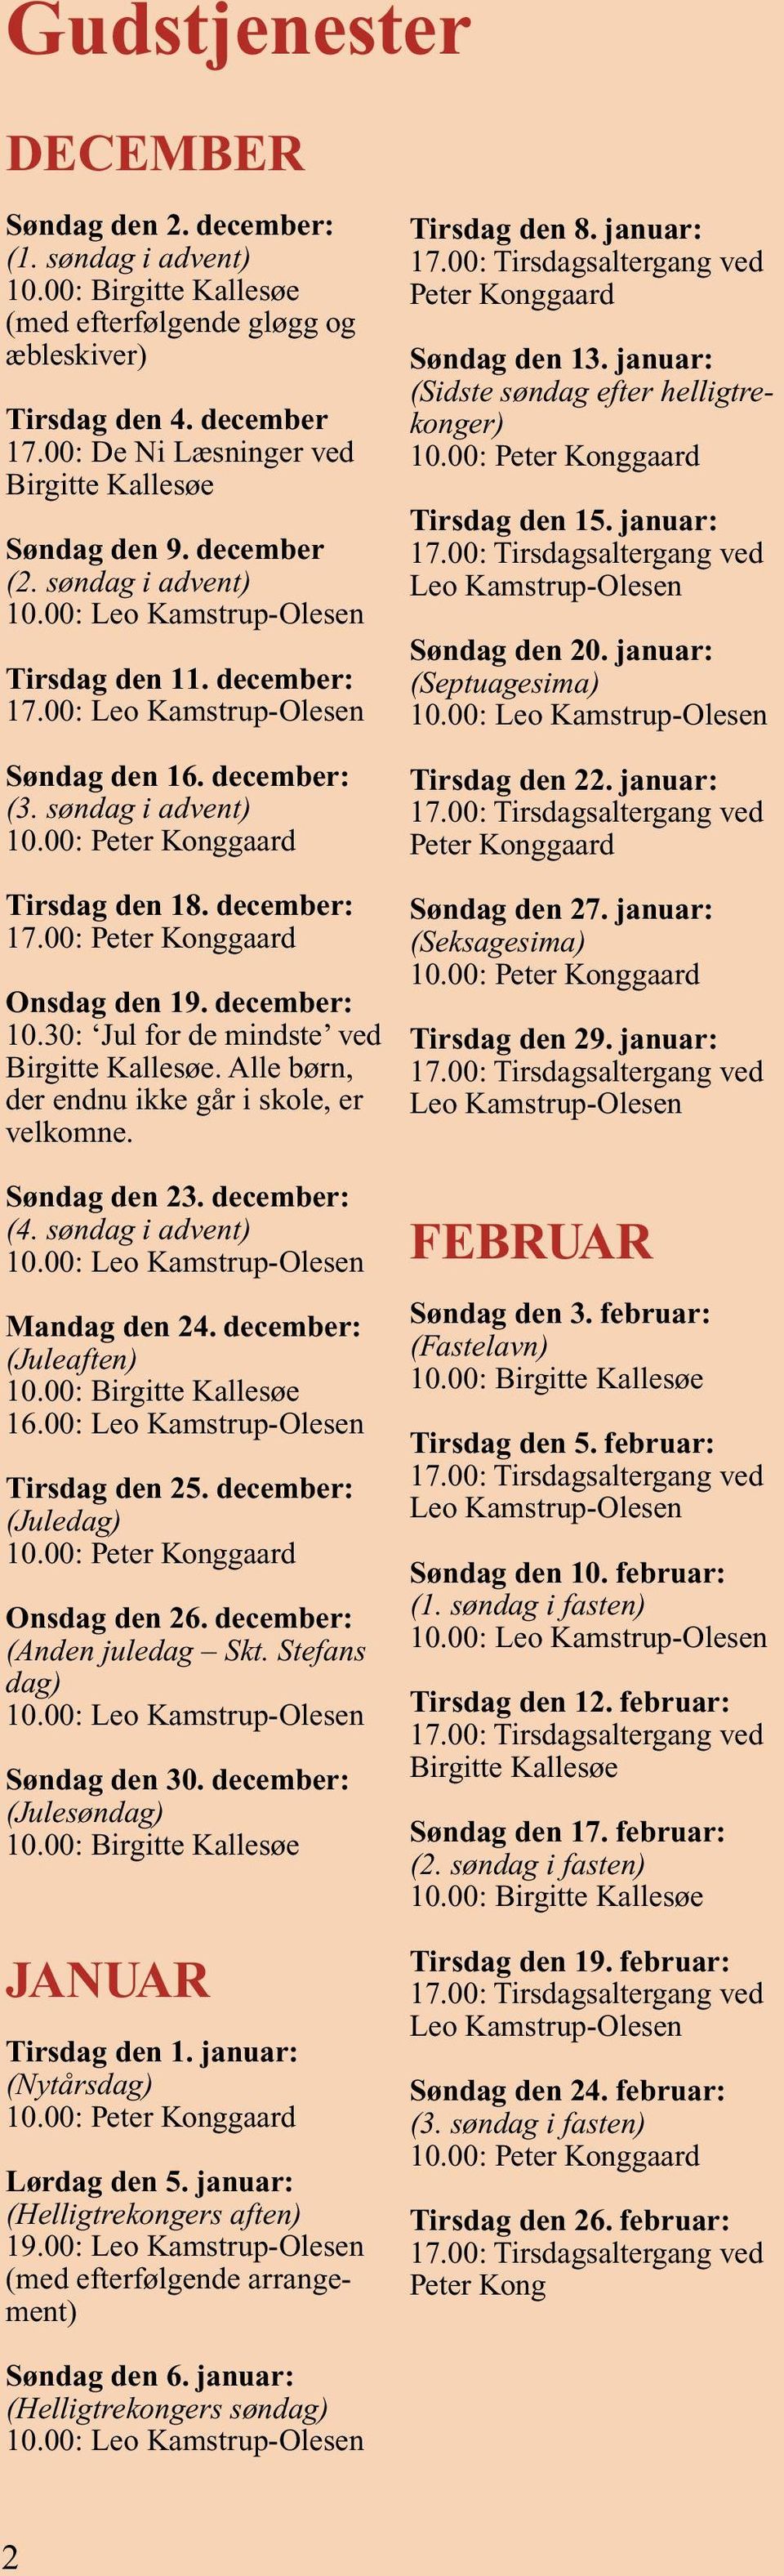 december: 10.30: Jul for de mindste ved Birgitte Kallesøe. Alle børn, der endnu ikke går i skole, er velkomne. Søndag den 23. december: (4. søndag i advent) Mandag den 24. december: (Juleaften) 16.